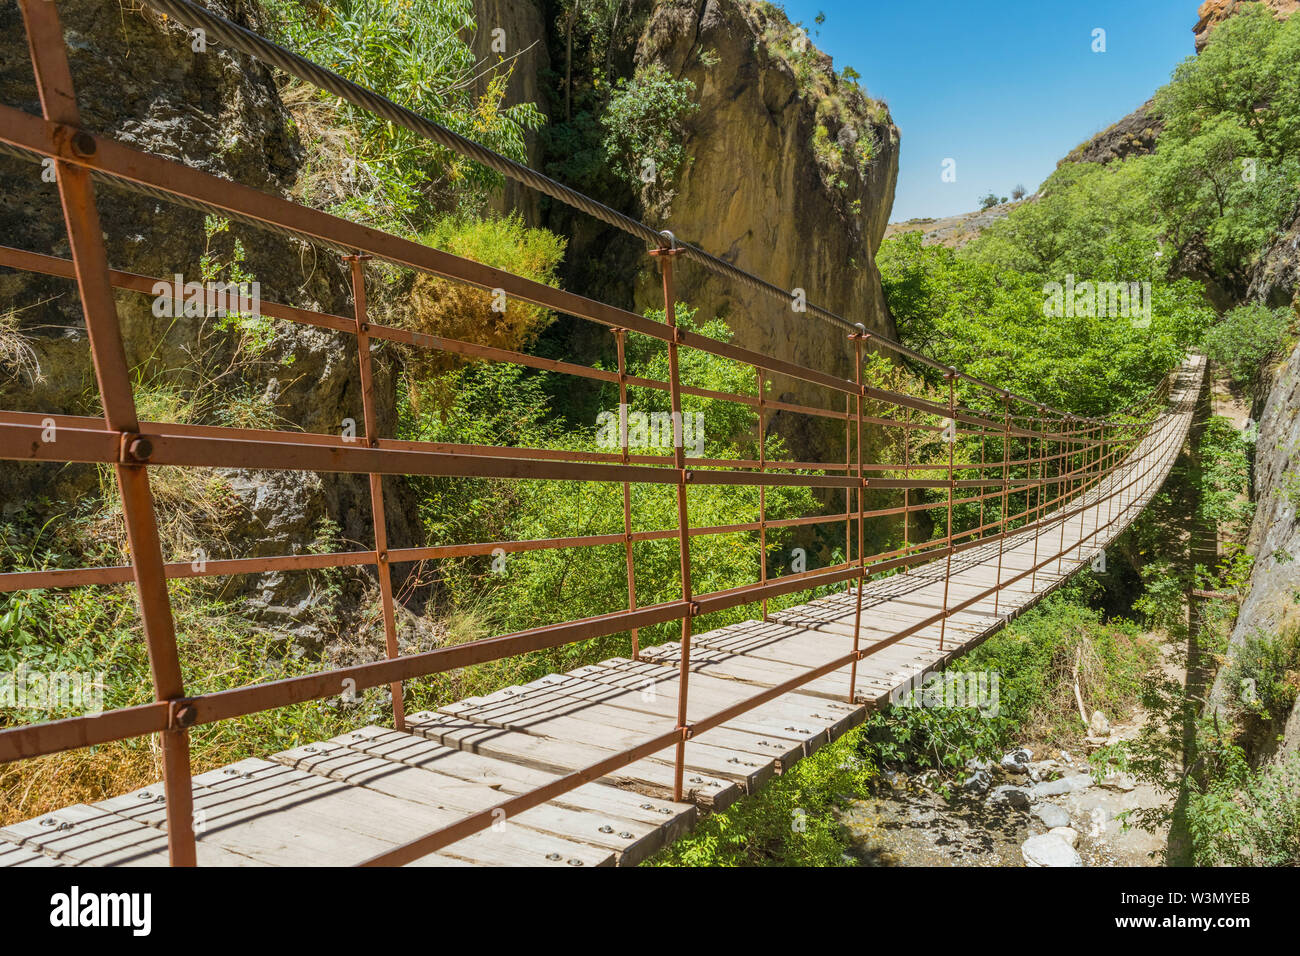 Uno de los puentes de los Cahorros, parte de Sierra Nevada. Stock Photo